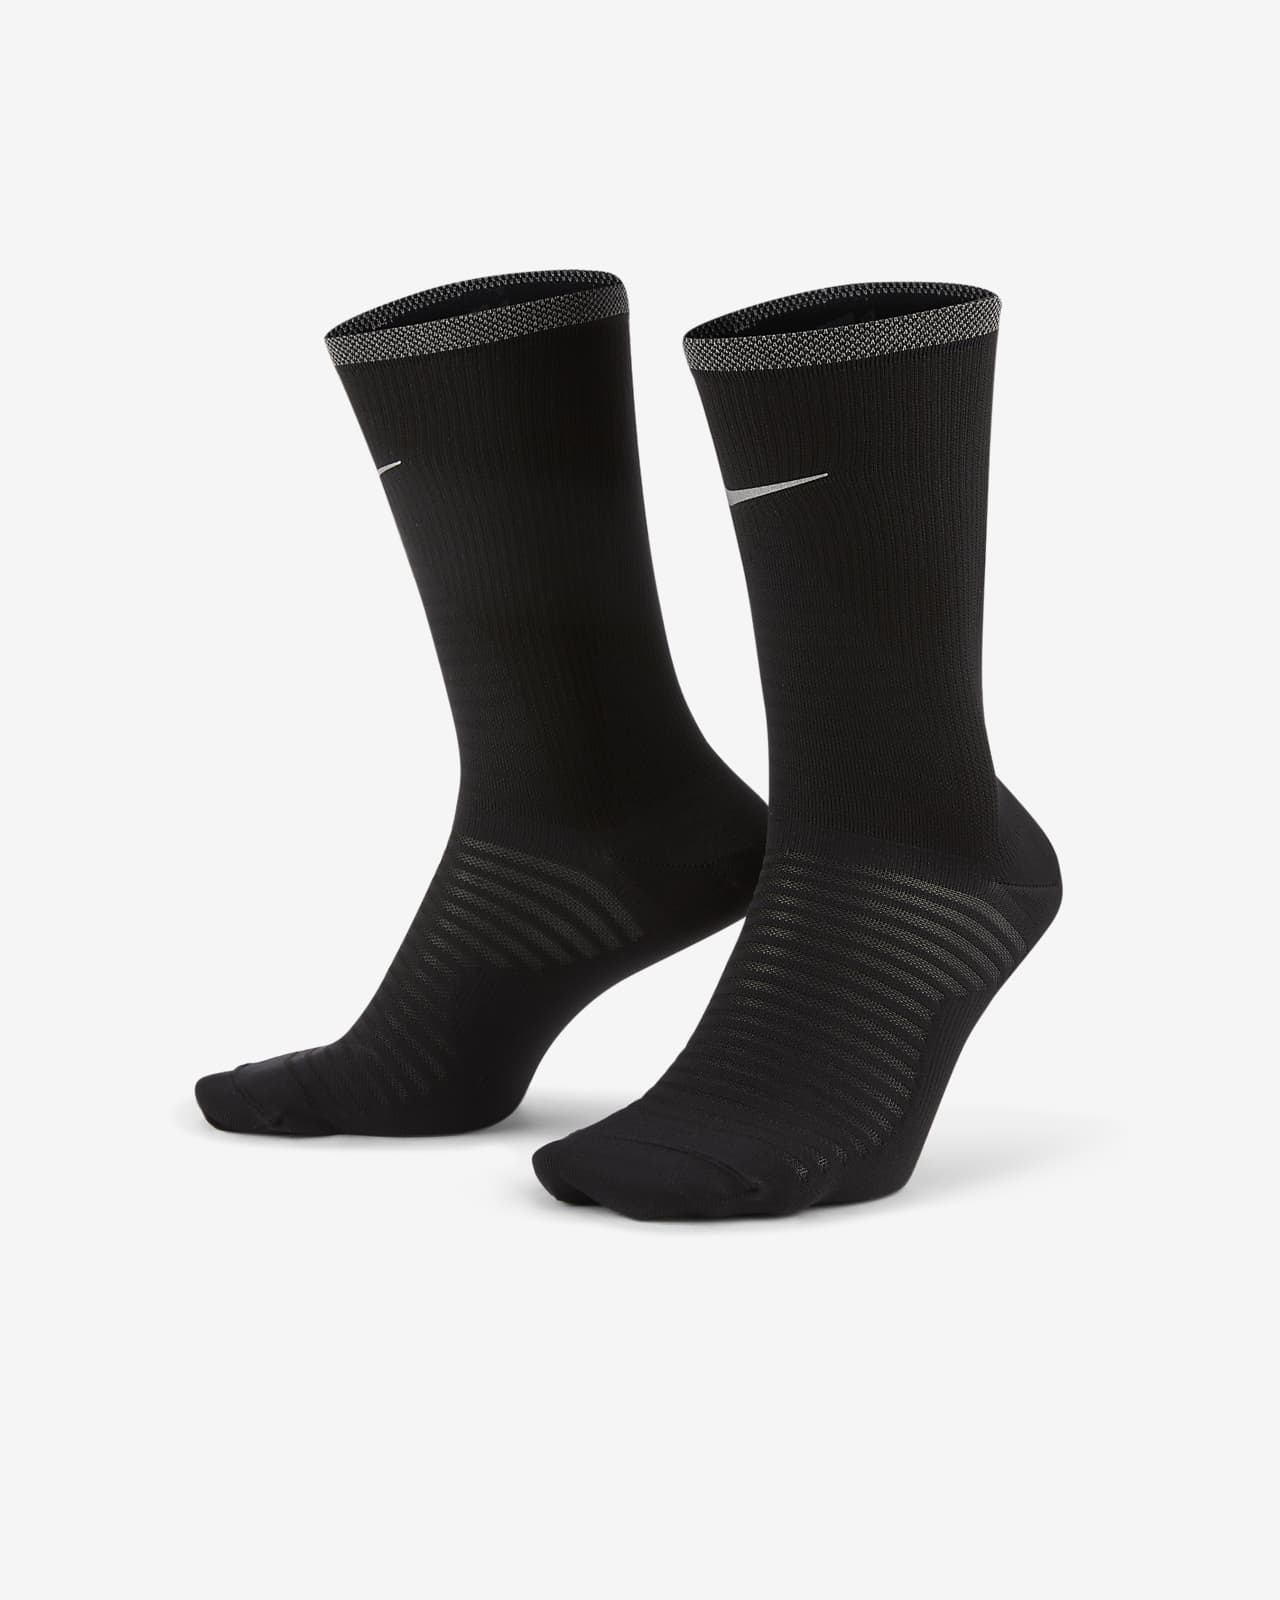 Κάλτσες μεσαίου ύψους για τρέξιμο Nike Spark Lightweight